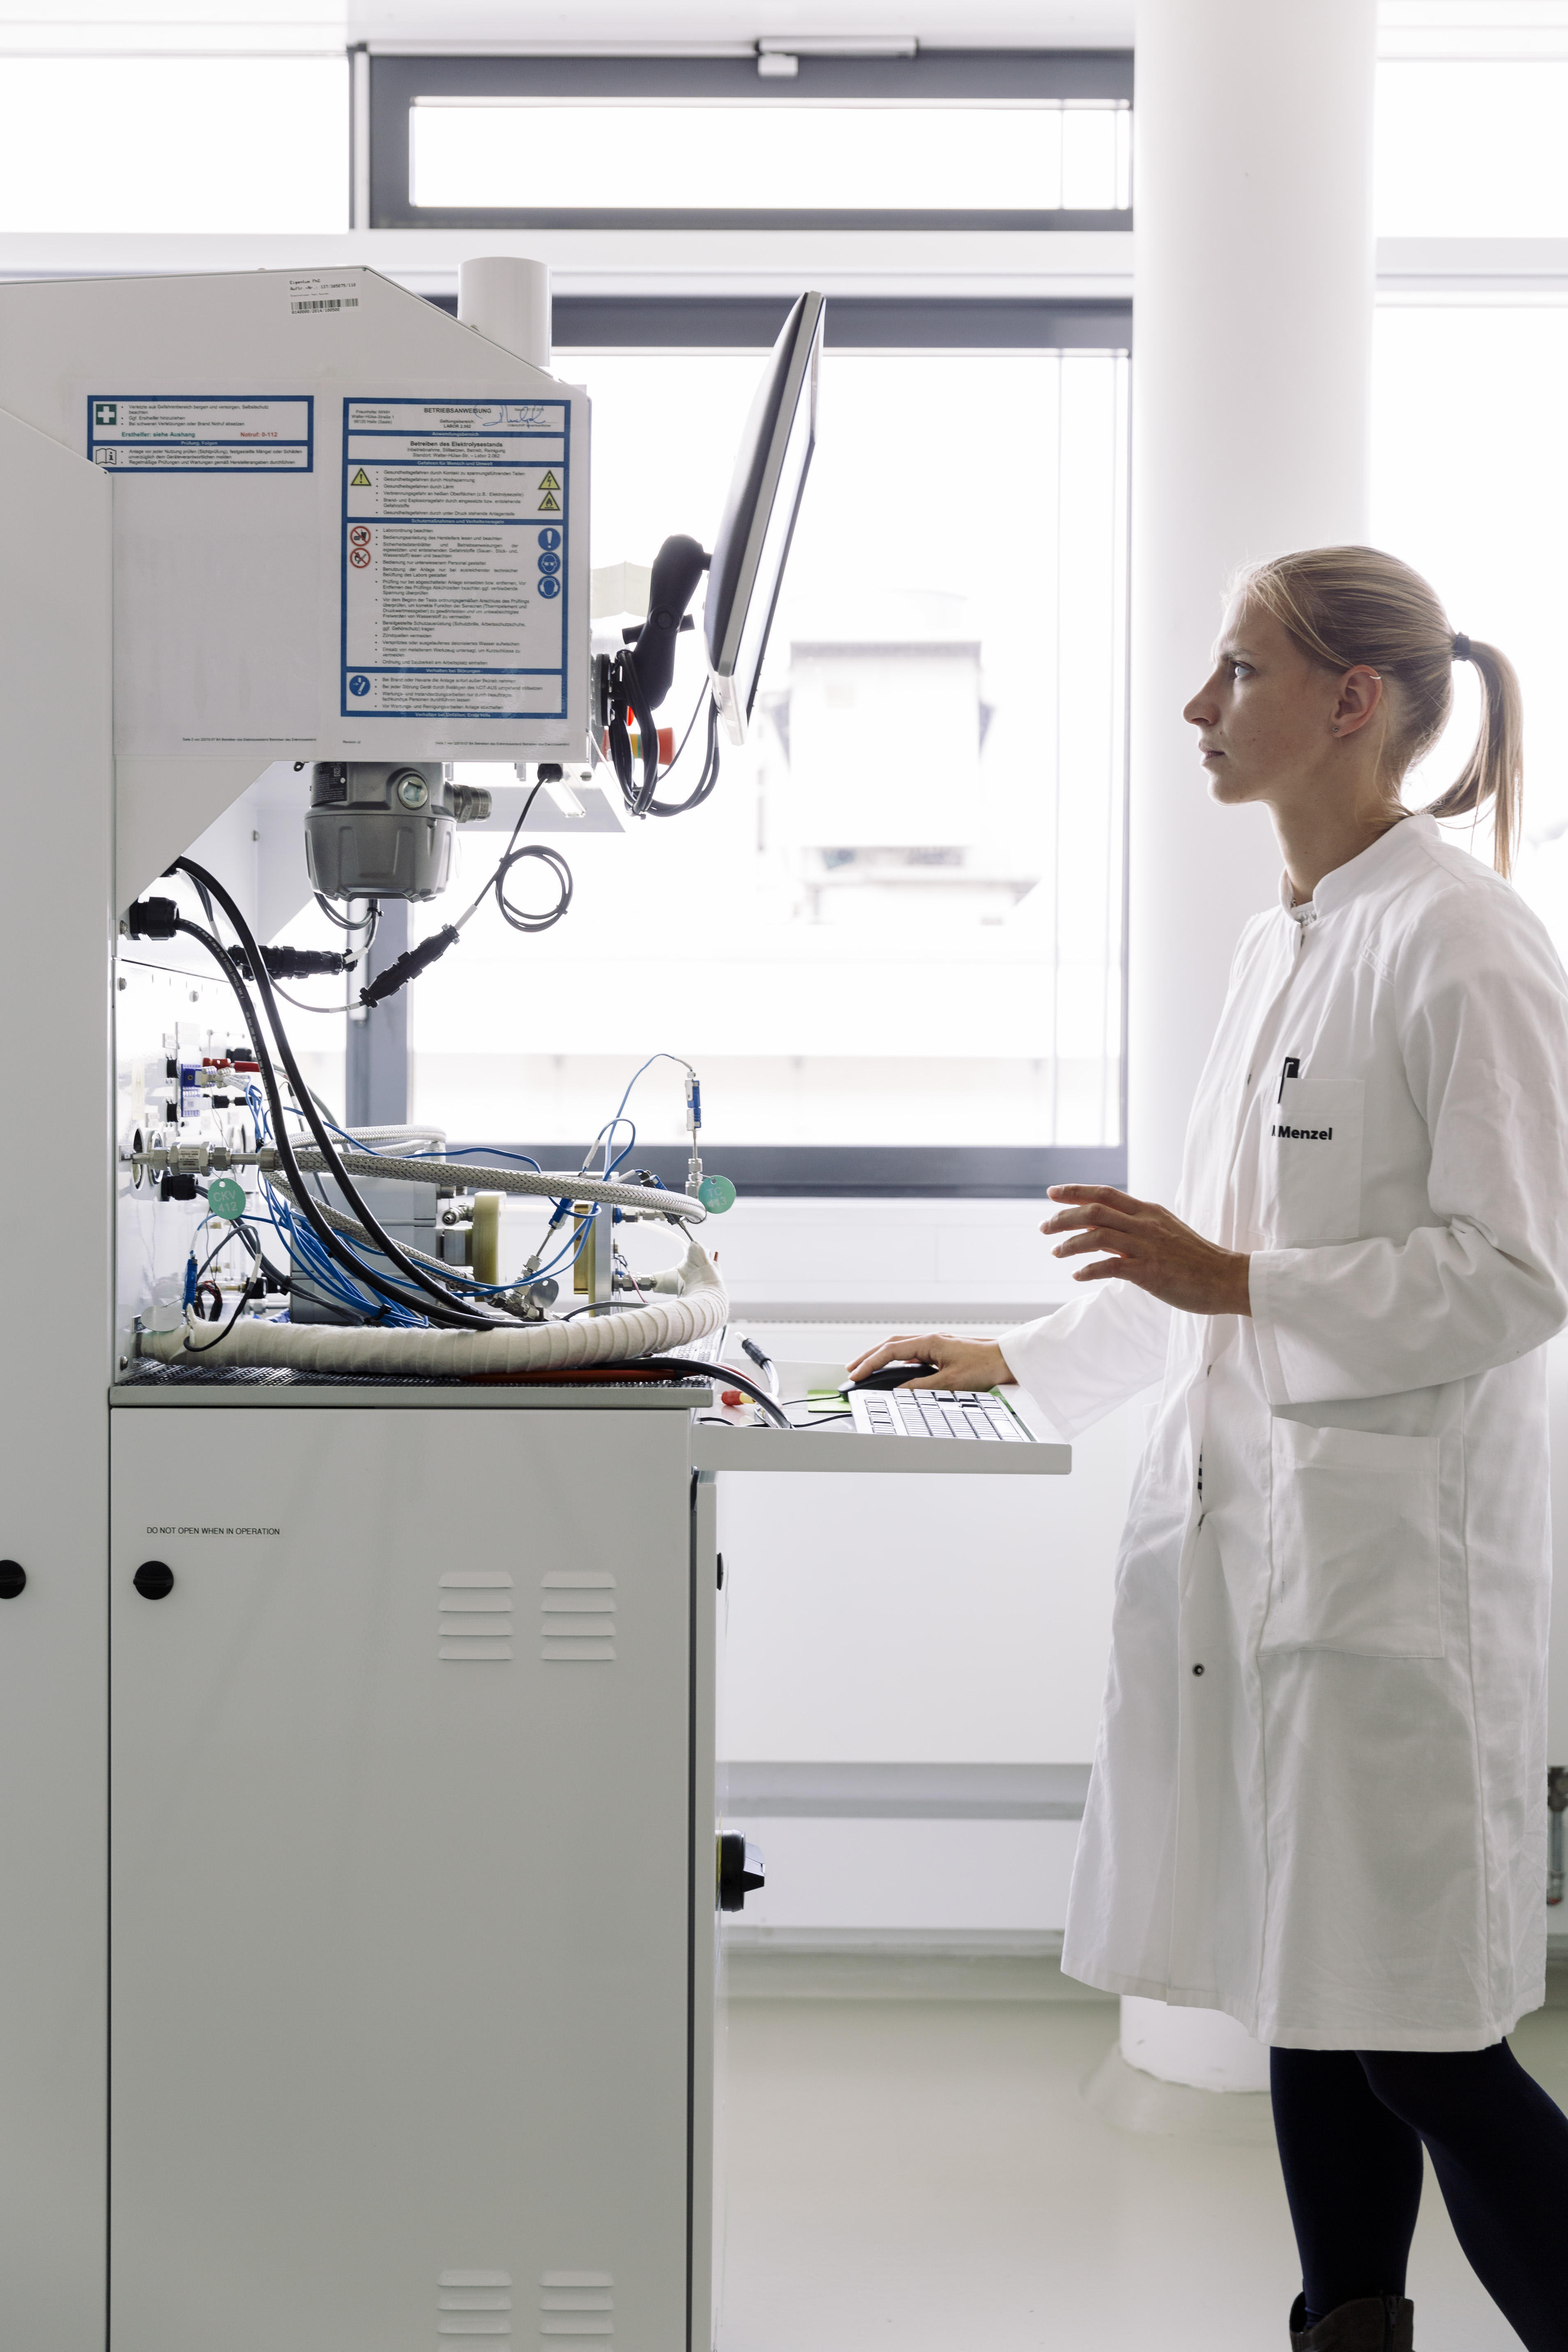 Die Diagnostik der in Elektrolyseuren eingesetzten Materialien ist entscheidend für die Leistungsfähigkeit und Lebensdauer. Quelle: Fraunhofer IMWS